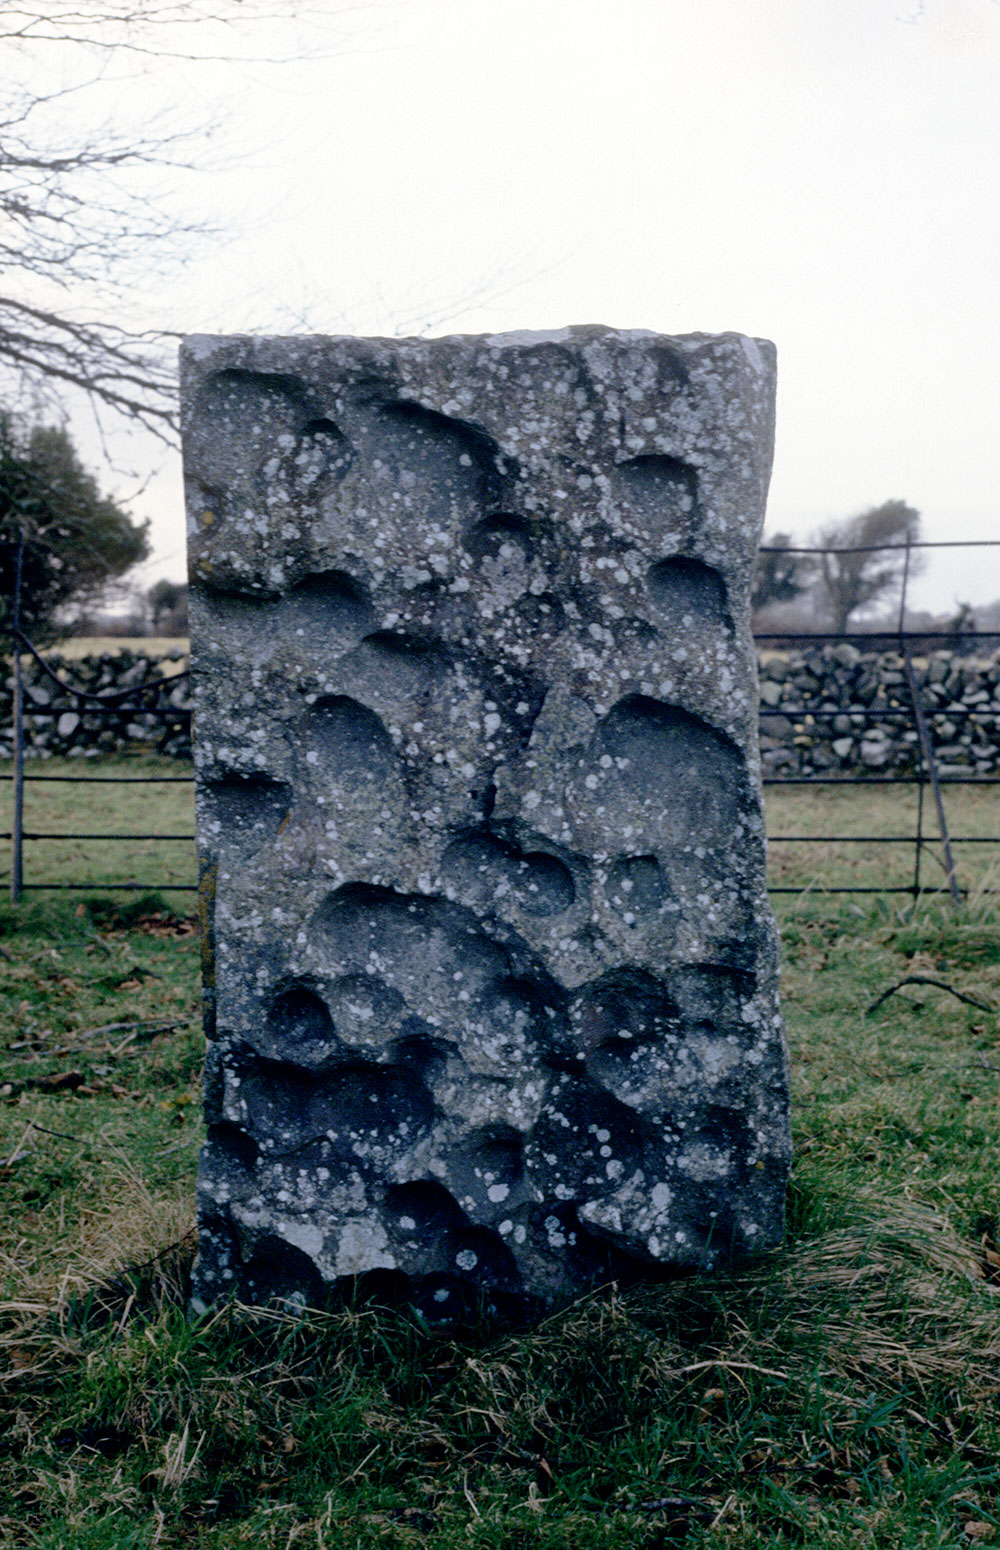 A circle stone at Nymphsfield close to Cong.